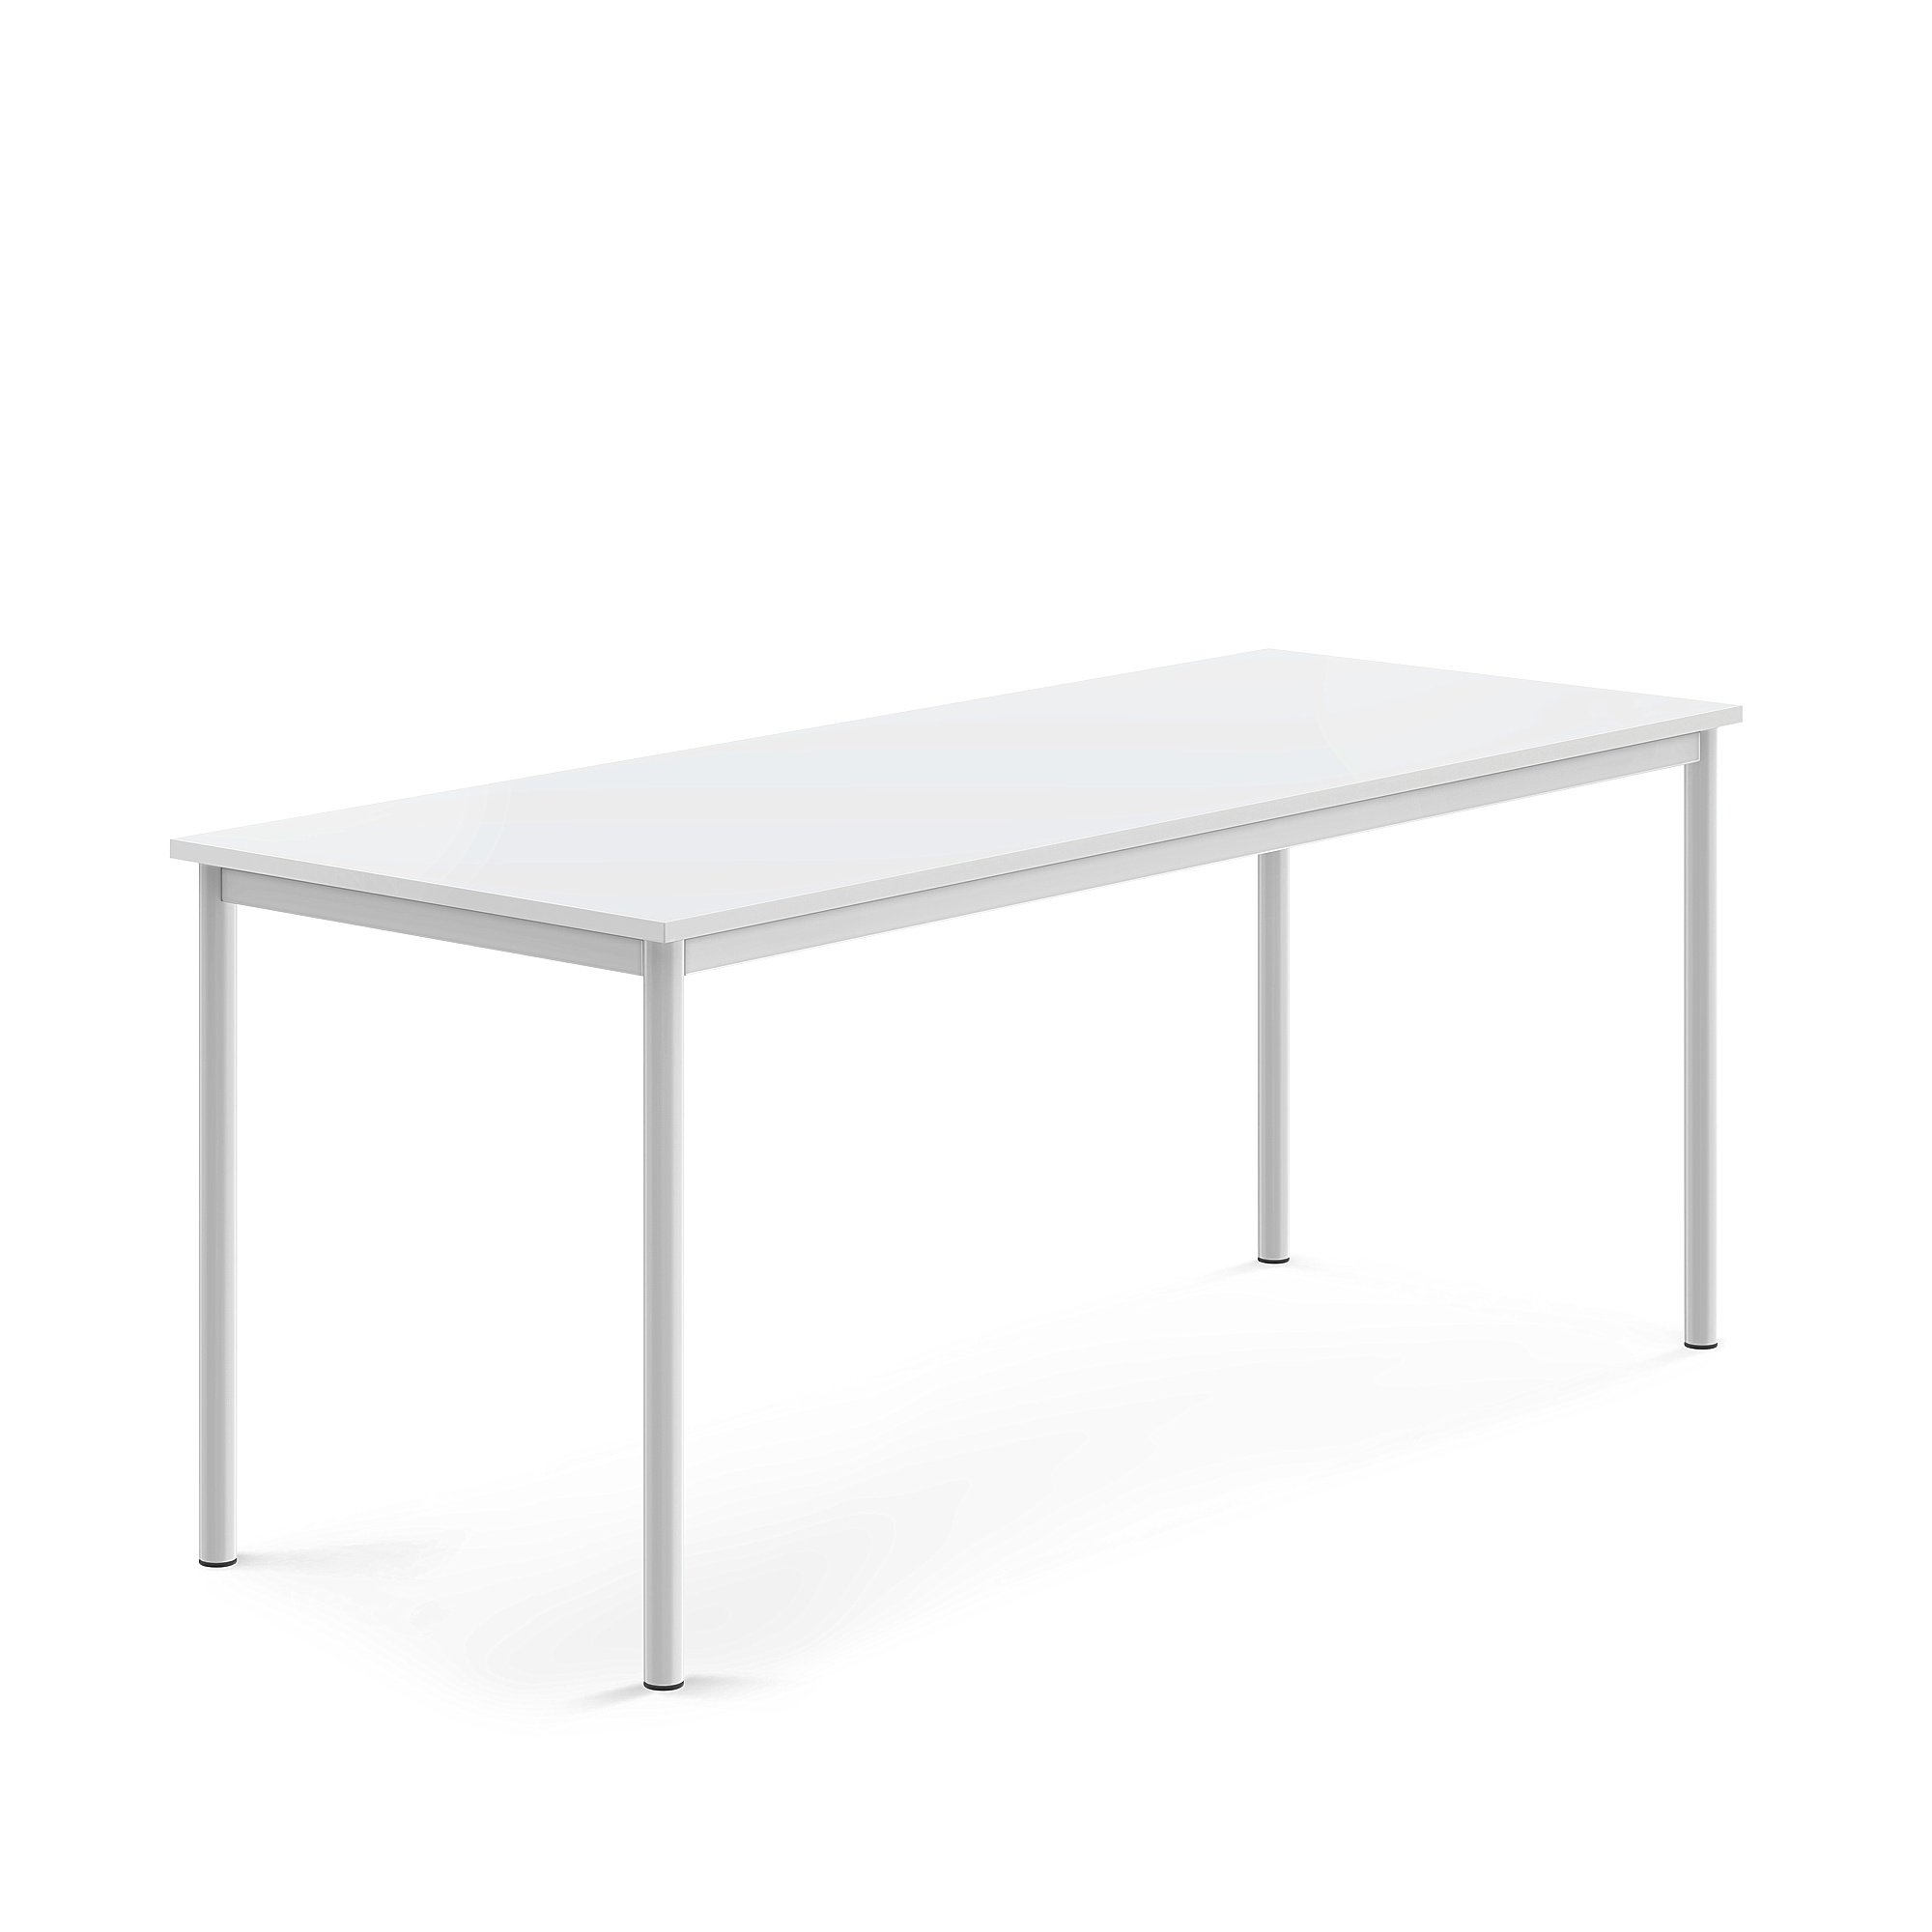 Stůl BORÅS, 1800x700x720 mm, bílé nohy, HPL deska, bílá